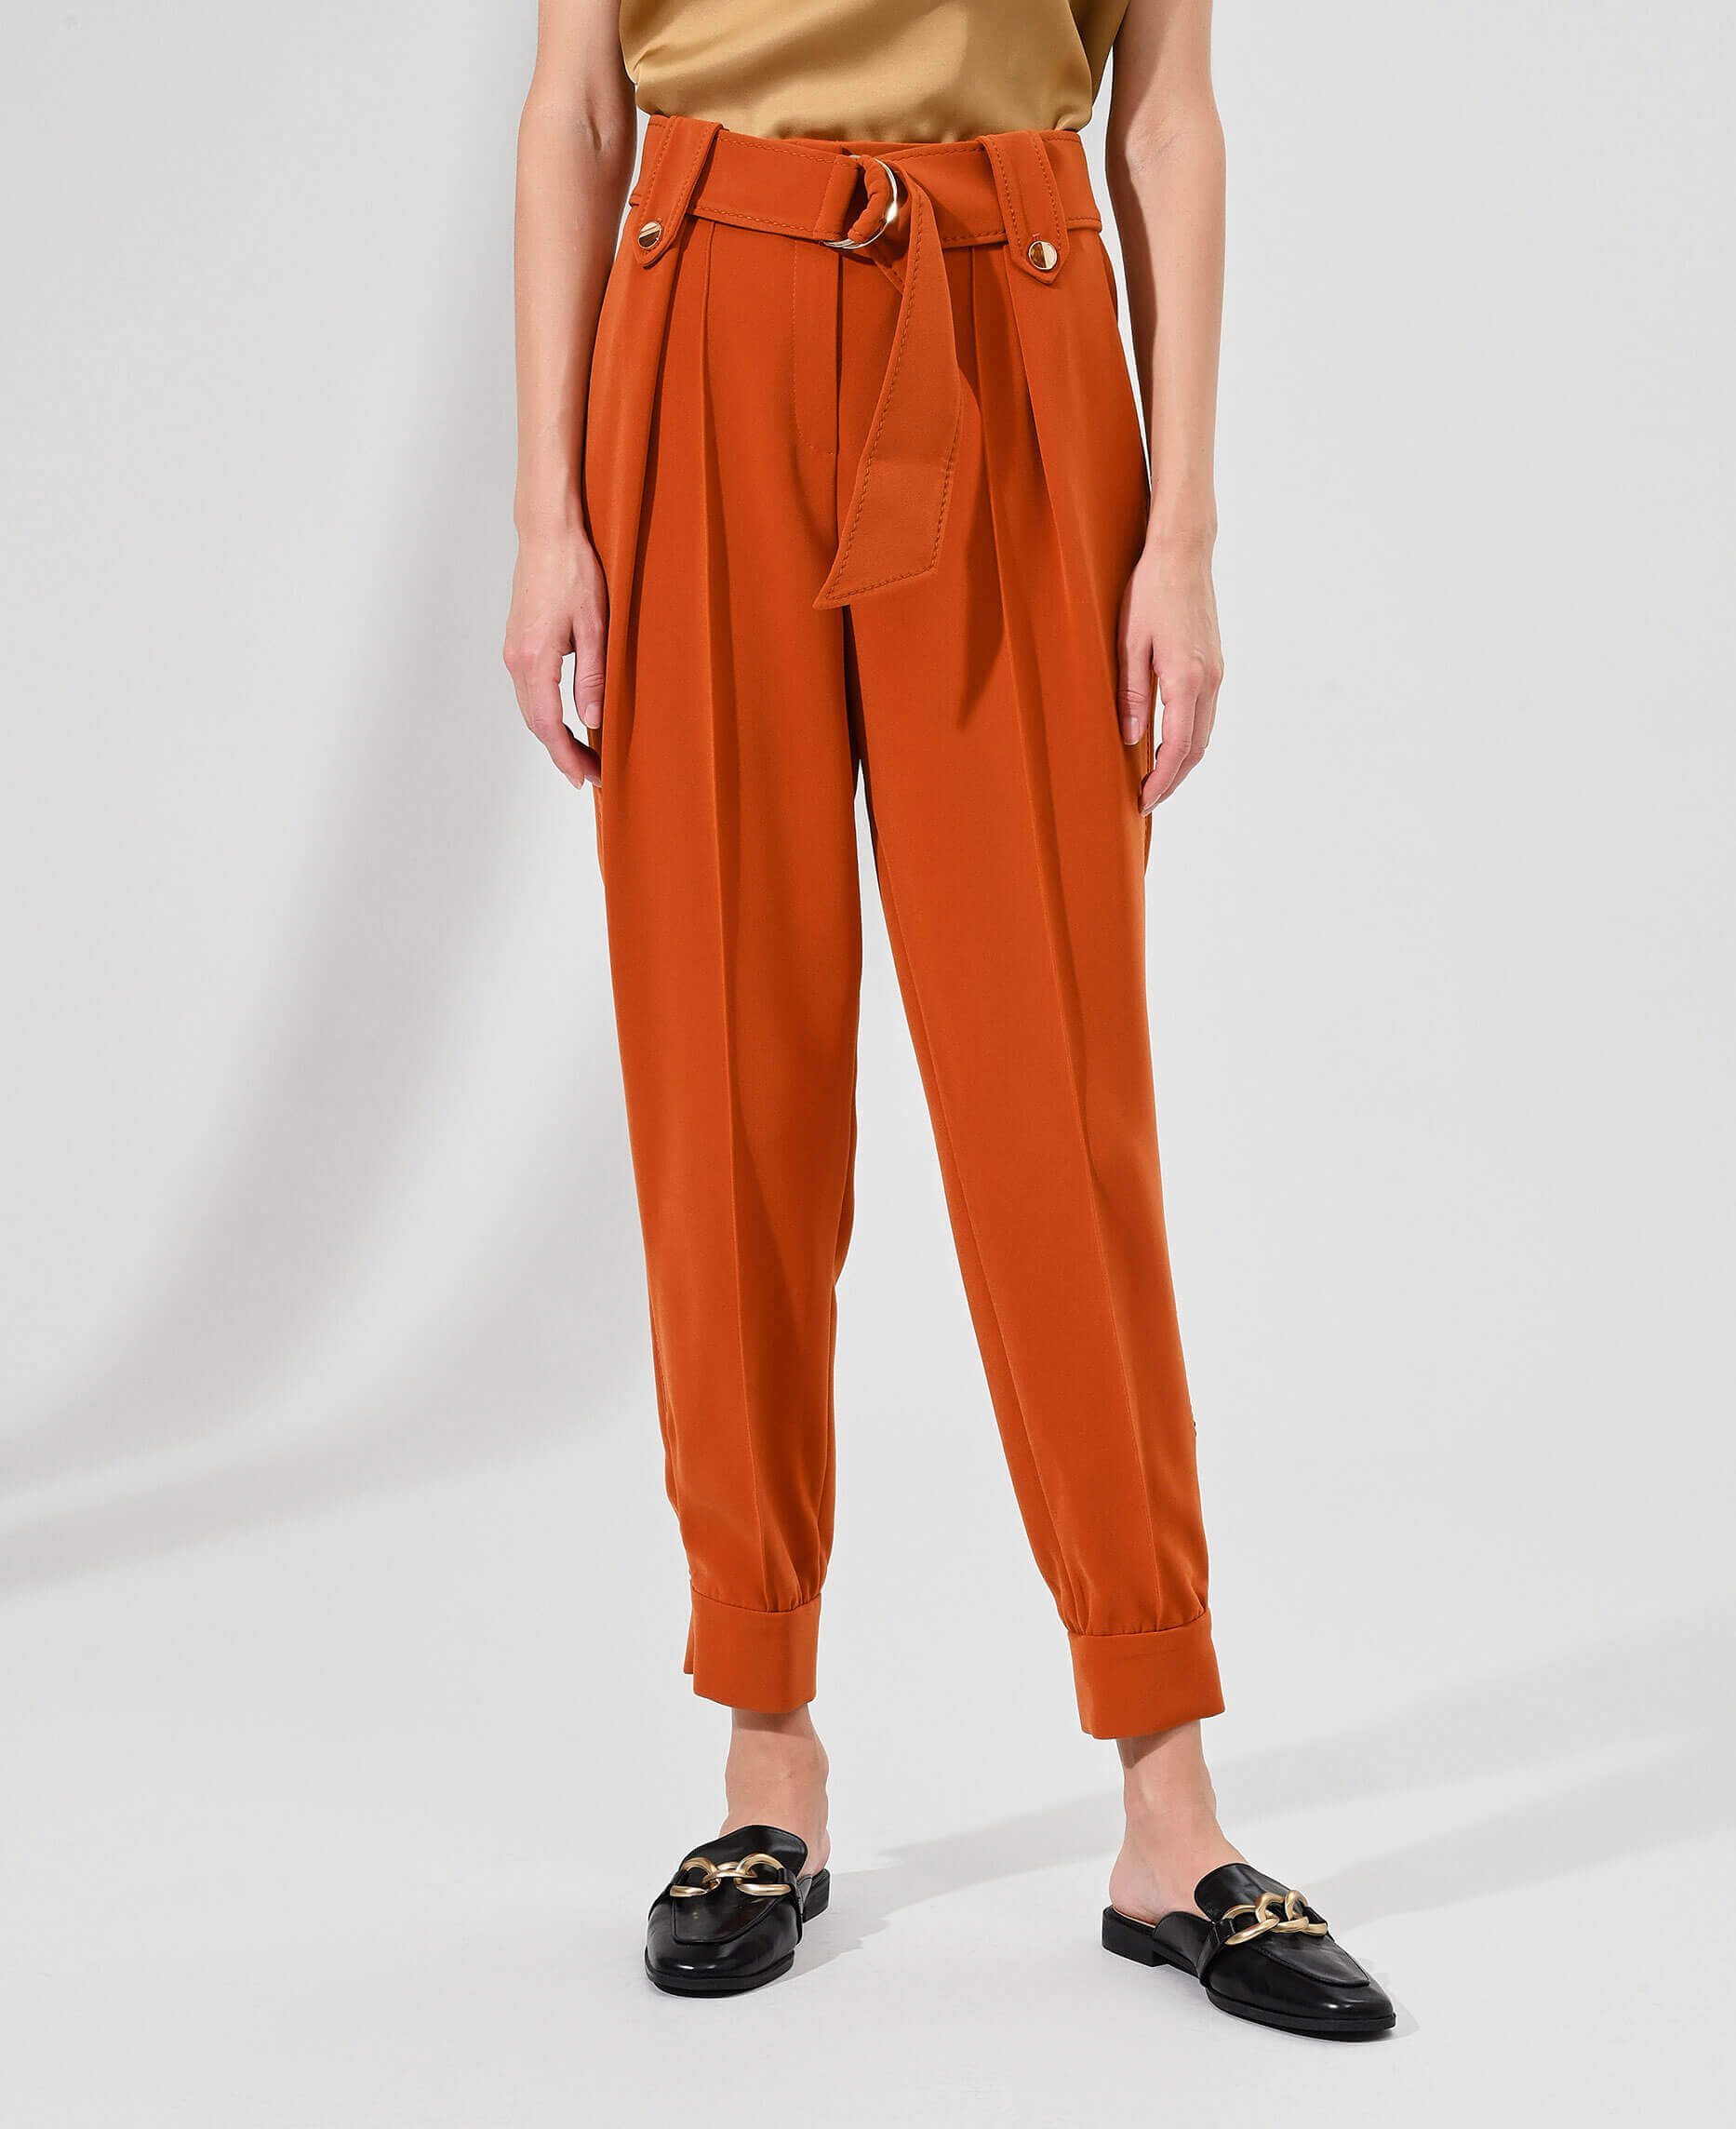 Зауженные брюки с манжетами и стрелками Цвет Оранжевый